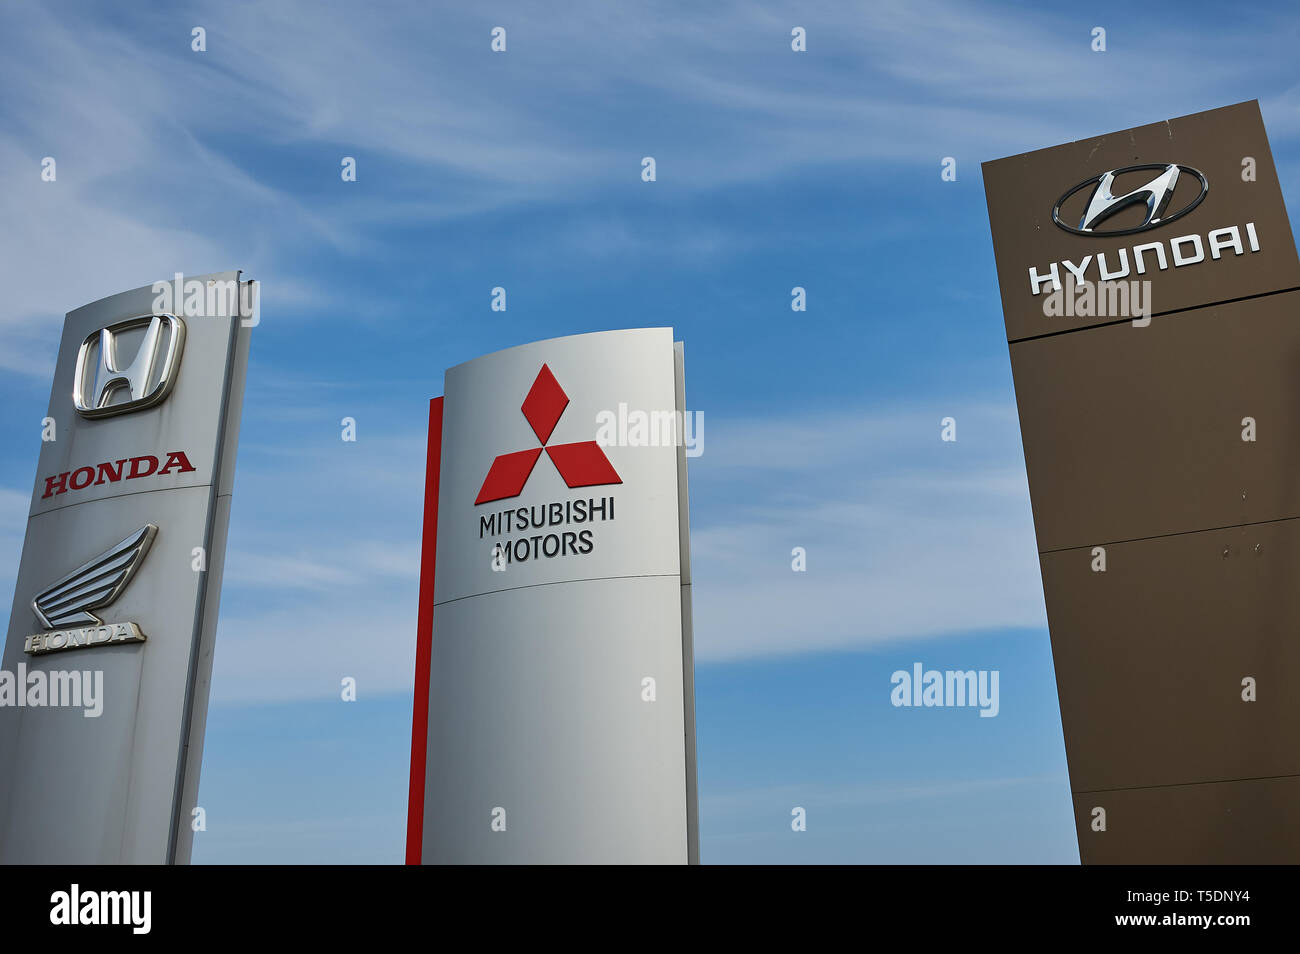 Totem Pole identifizieren japanischer Automobilhersteller außerhalb eines Auto Show room, vor blauem Himmel. Stockfoto